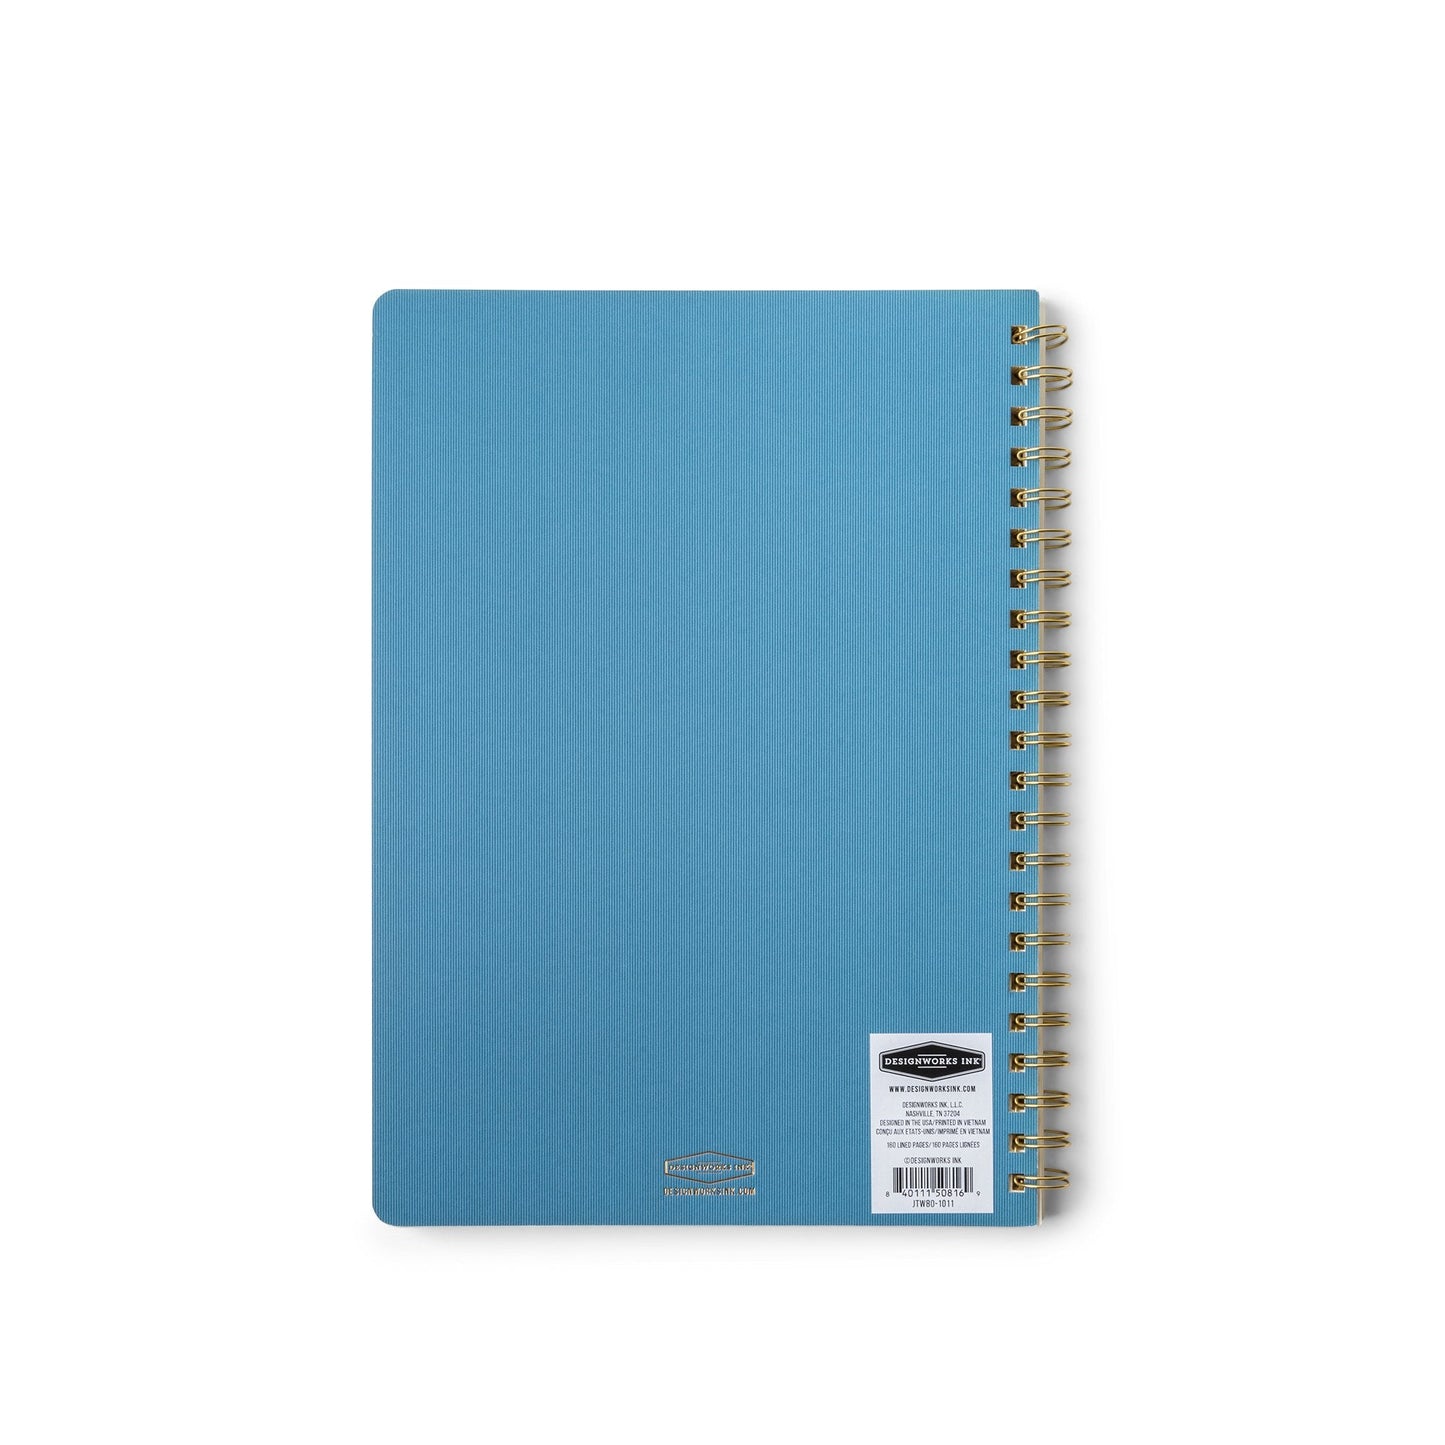 Crest A4 Notebook - Blue